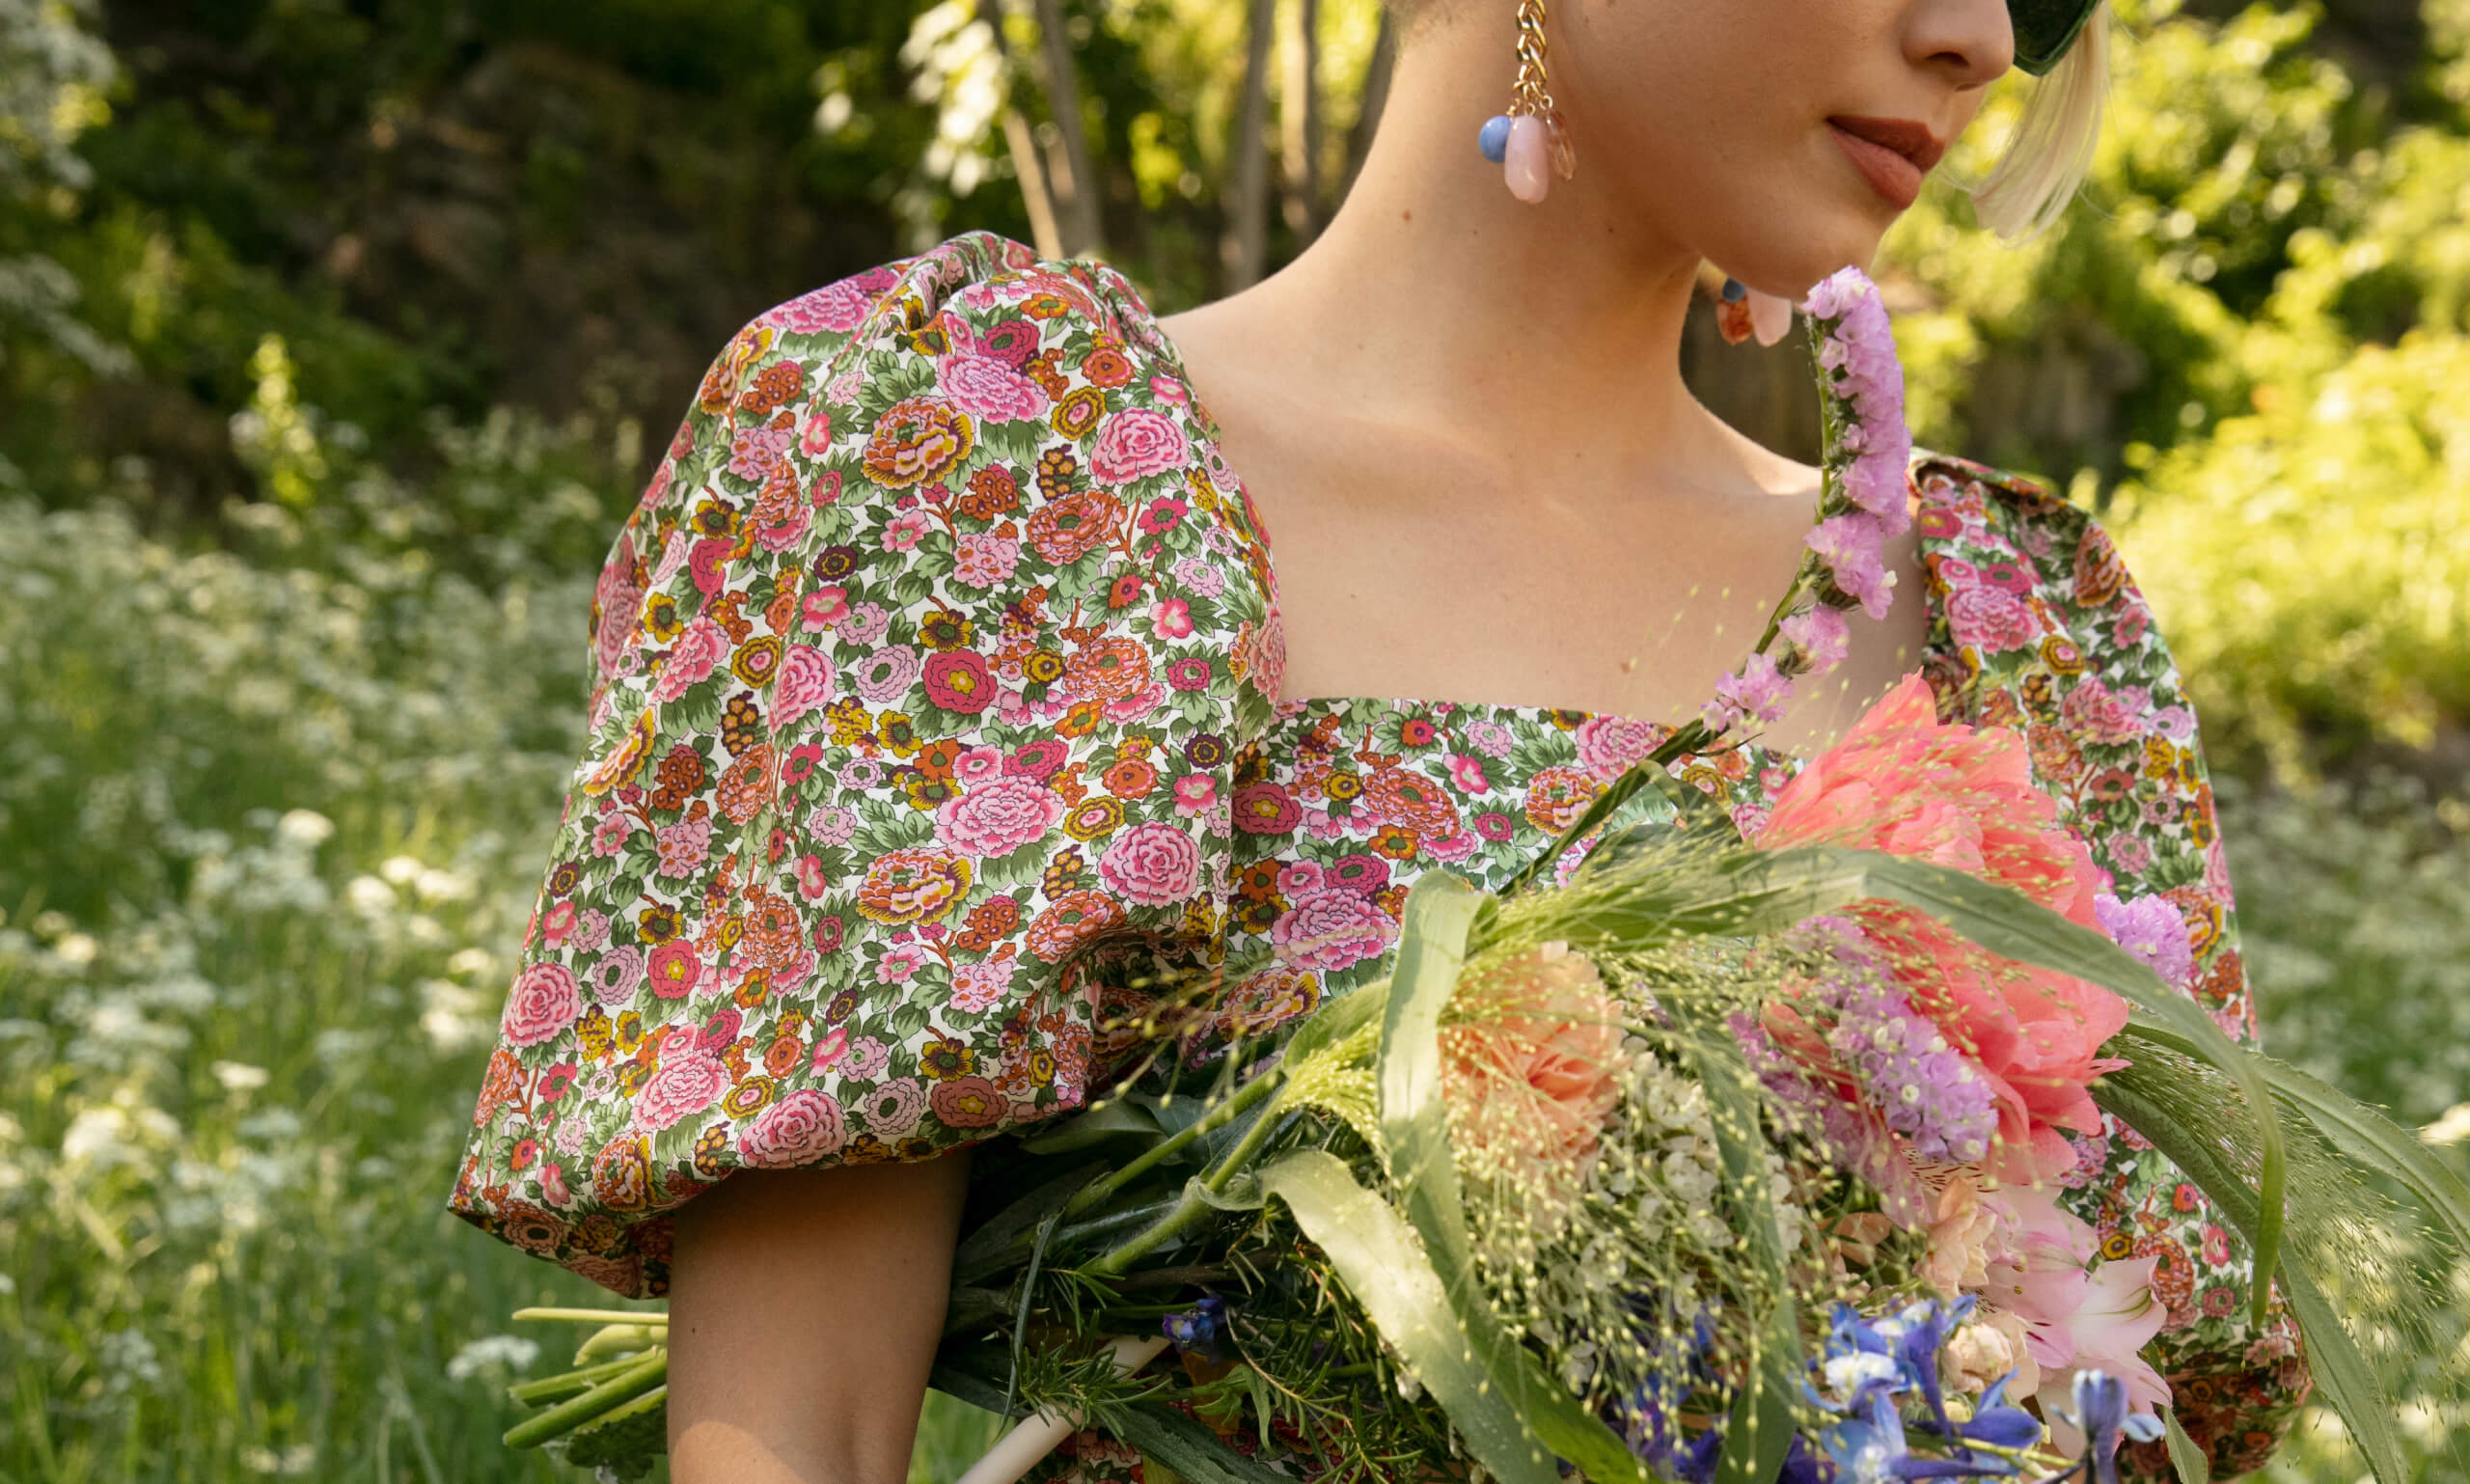 Woman in flowery dress